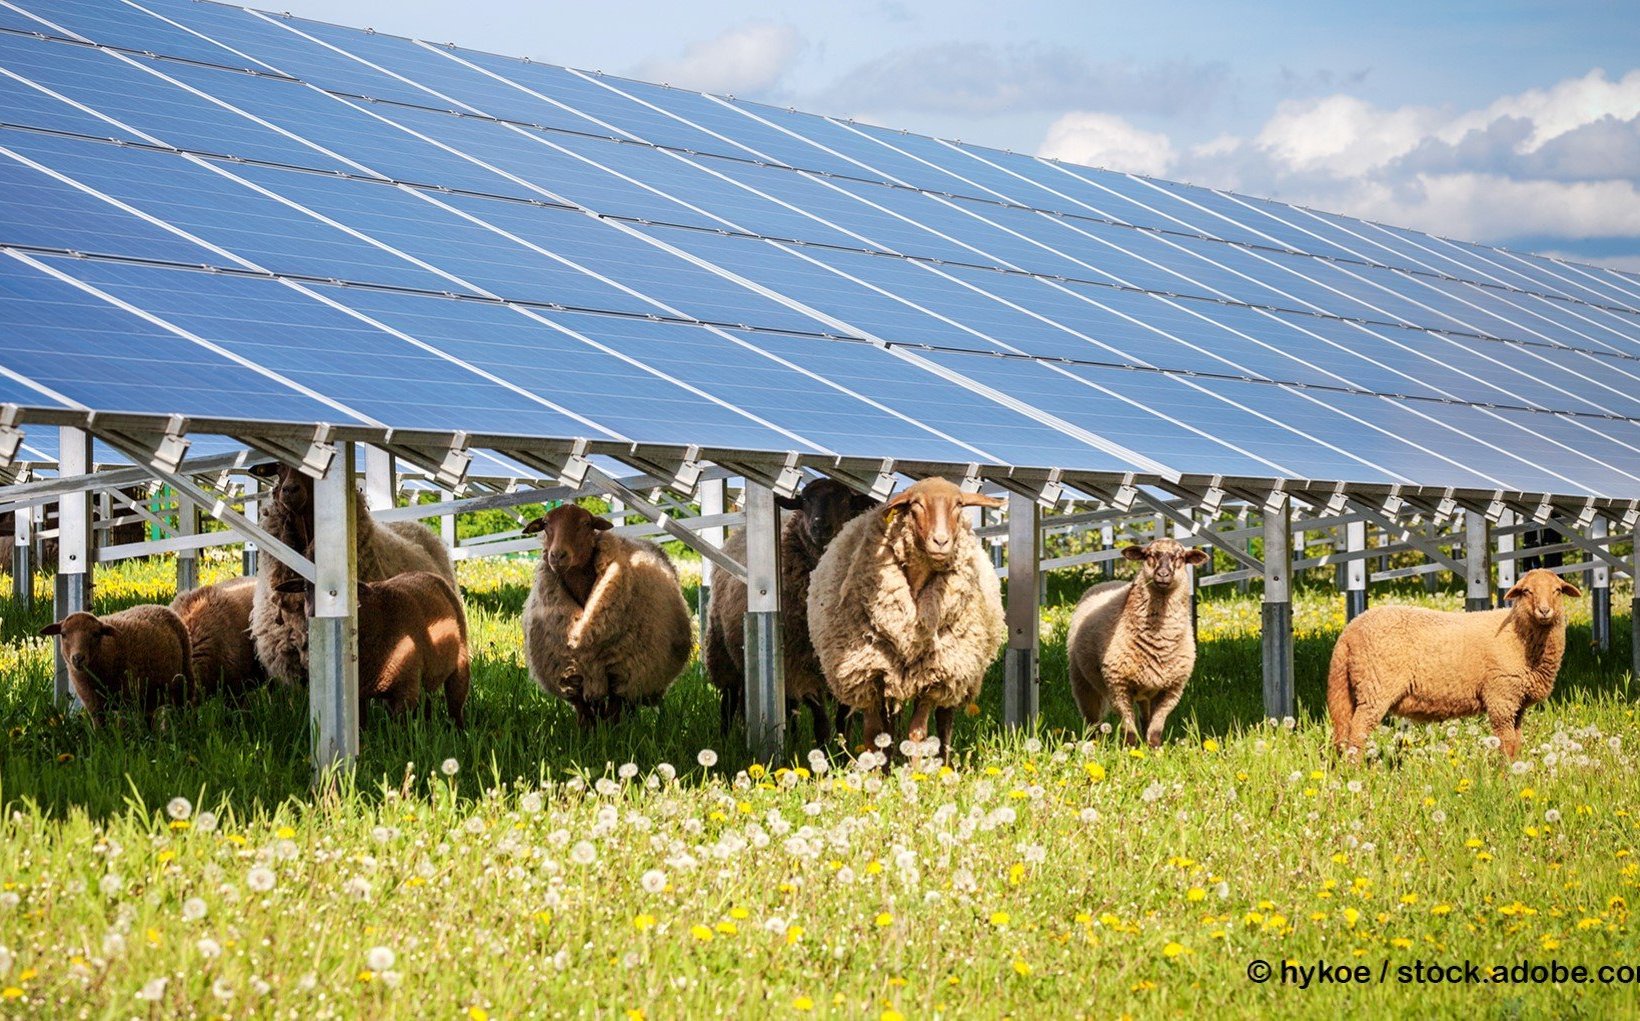 Solarpark mit Schafen